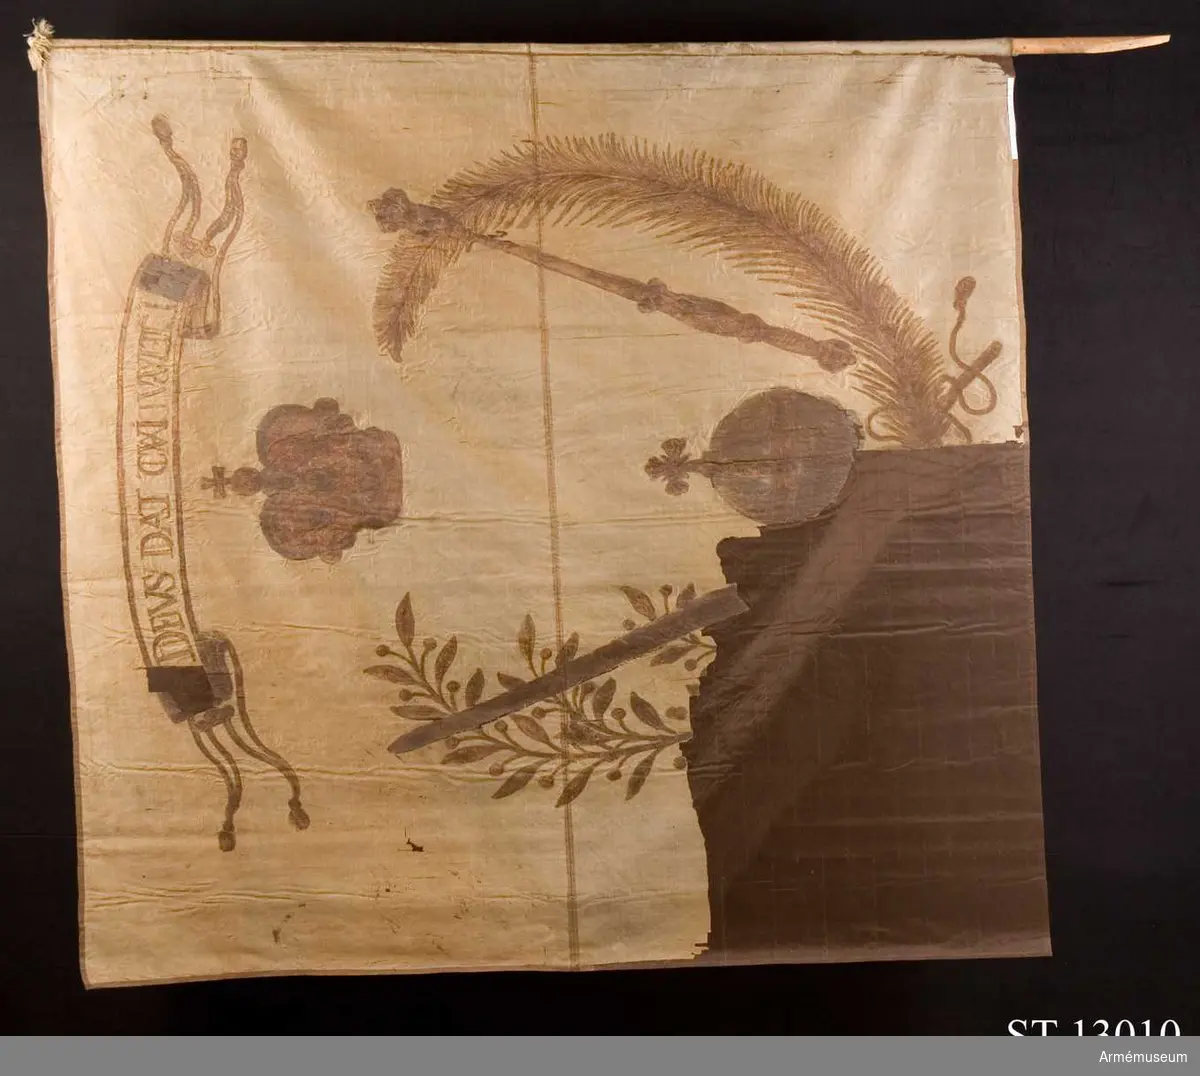 Dukens motiv består av en olivkrans och en palmkvist som är sammanbundna i nederkant. Mellan dessa står kungliga insignia: svärd, spira, riksäpple och krona. Detta motiv återfinns också på det dalermynt som präglades i Torún på 1632. Överst ett språkband.